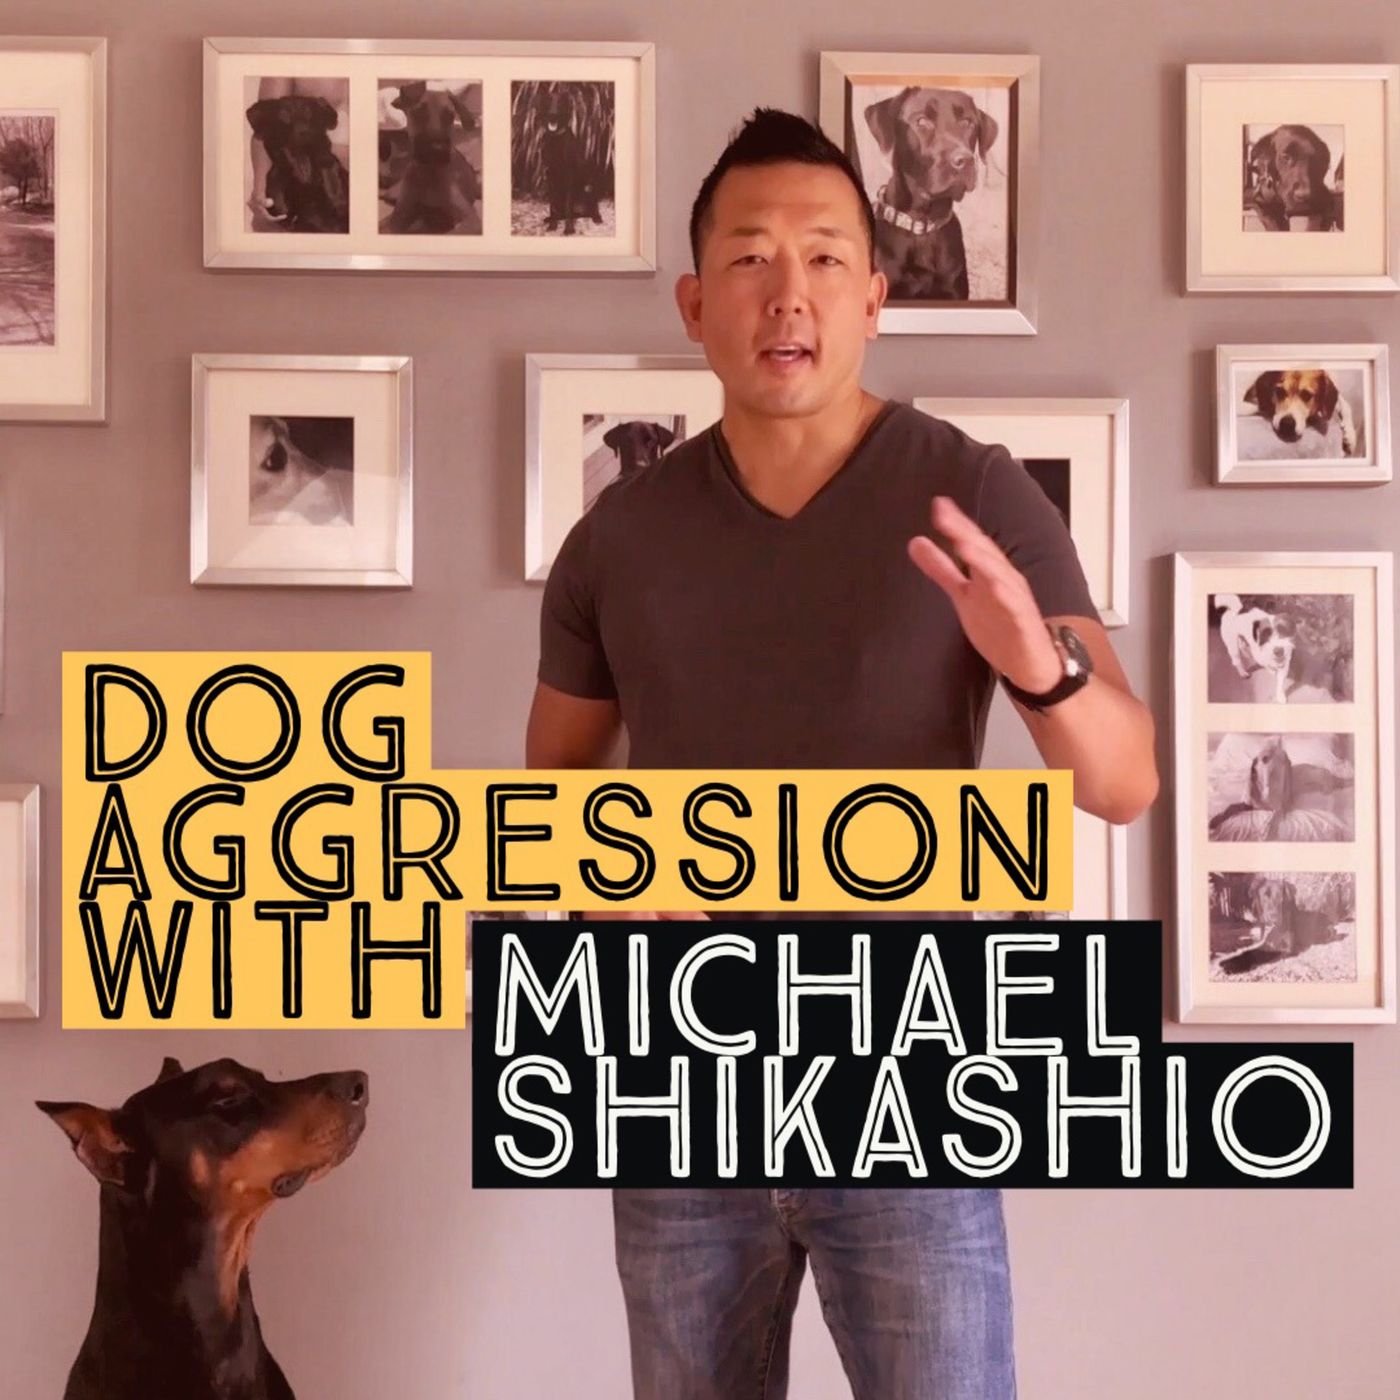 Aggression in Dogs: Michael Shikashio